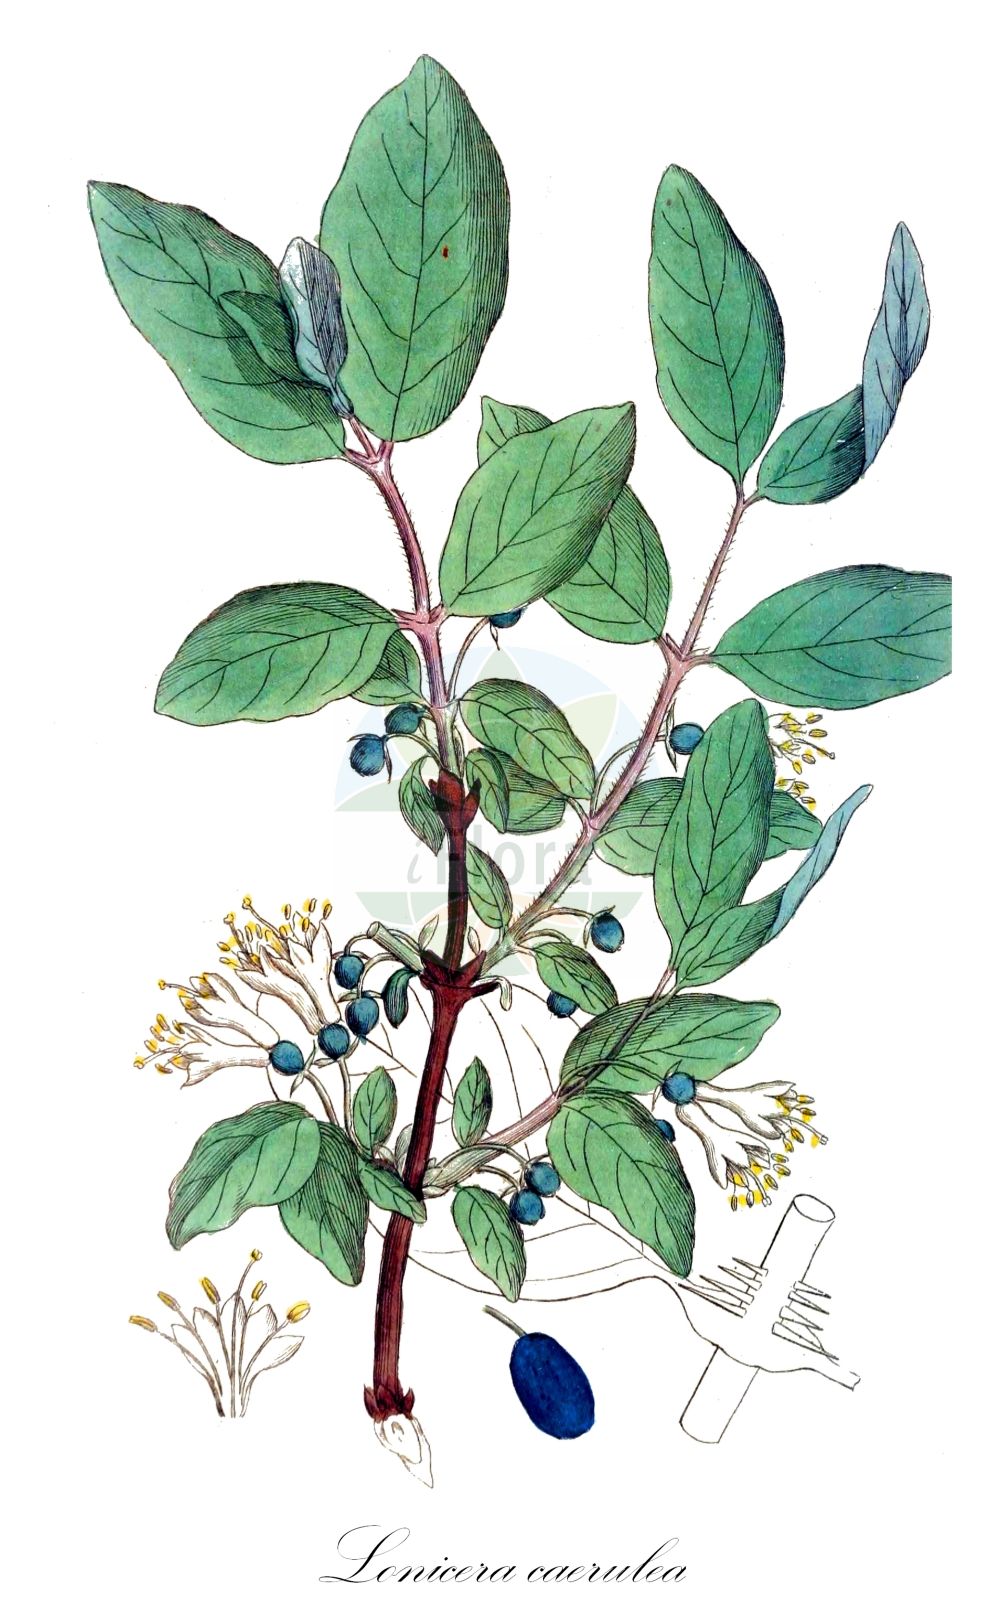 Historische Abbildung von Lonicera caerulea (Blaue Heckenkirsche - Blue-berried Honeysuckle). Das Bild zeigt Blatt, Bluete, Frucht und Same. ---- Historical Drawing of Lonicera caerulea (Blaue Heckenkirsche - Blue-berried Honeysuckle). The image is showing leaf, flower, fruit and seed.(Lonicera caerulea,Blaue Heckenkirsche,Blue-berried Honeysuckle,Caprifolium borbasianum,Lonicera borbasiana,Lonicera caerulea,Blaue Heckenkirsche,Blaues Geissblatt,Blue-berried Honeysuckle,Blue Honeysuckle,Weetberry Honeysuckle,Sweetberry Honeysuckle,Lonicera,Heckenkirsche,Honeysuckle,Caprifoliaceae,Geißblattgewächse,Honeysuckle family,Blatt,Bluete,Frucht,Same,leaf,flower,fruit,seed,Svensk Botanik (Svensk Botanik))